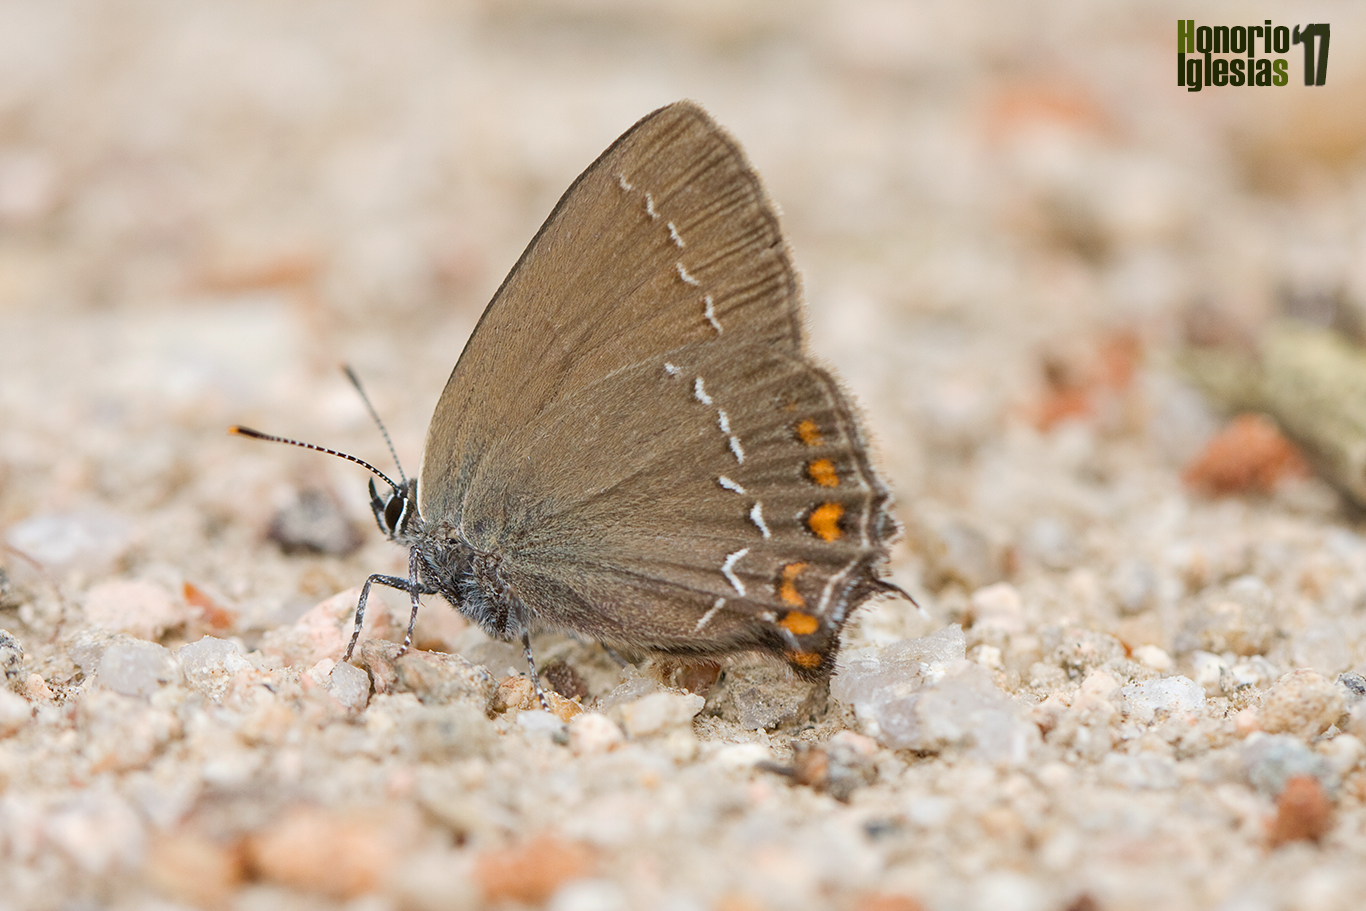 Reverso alar de mariposa rabicorta del roble o querquera serrana (Satyrium ilicis) sobre las arenas silíceas de un camino del Real de San Ildefonso.